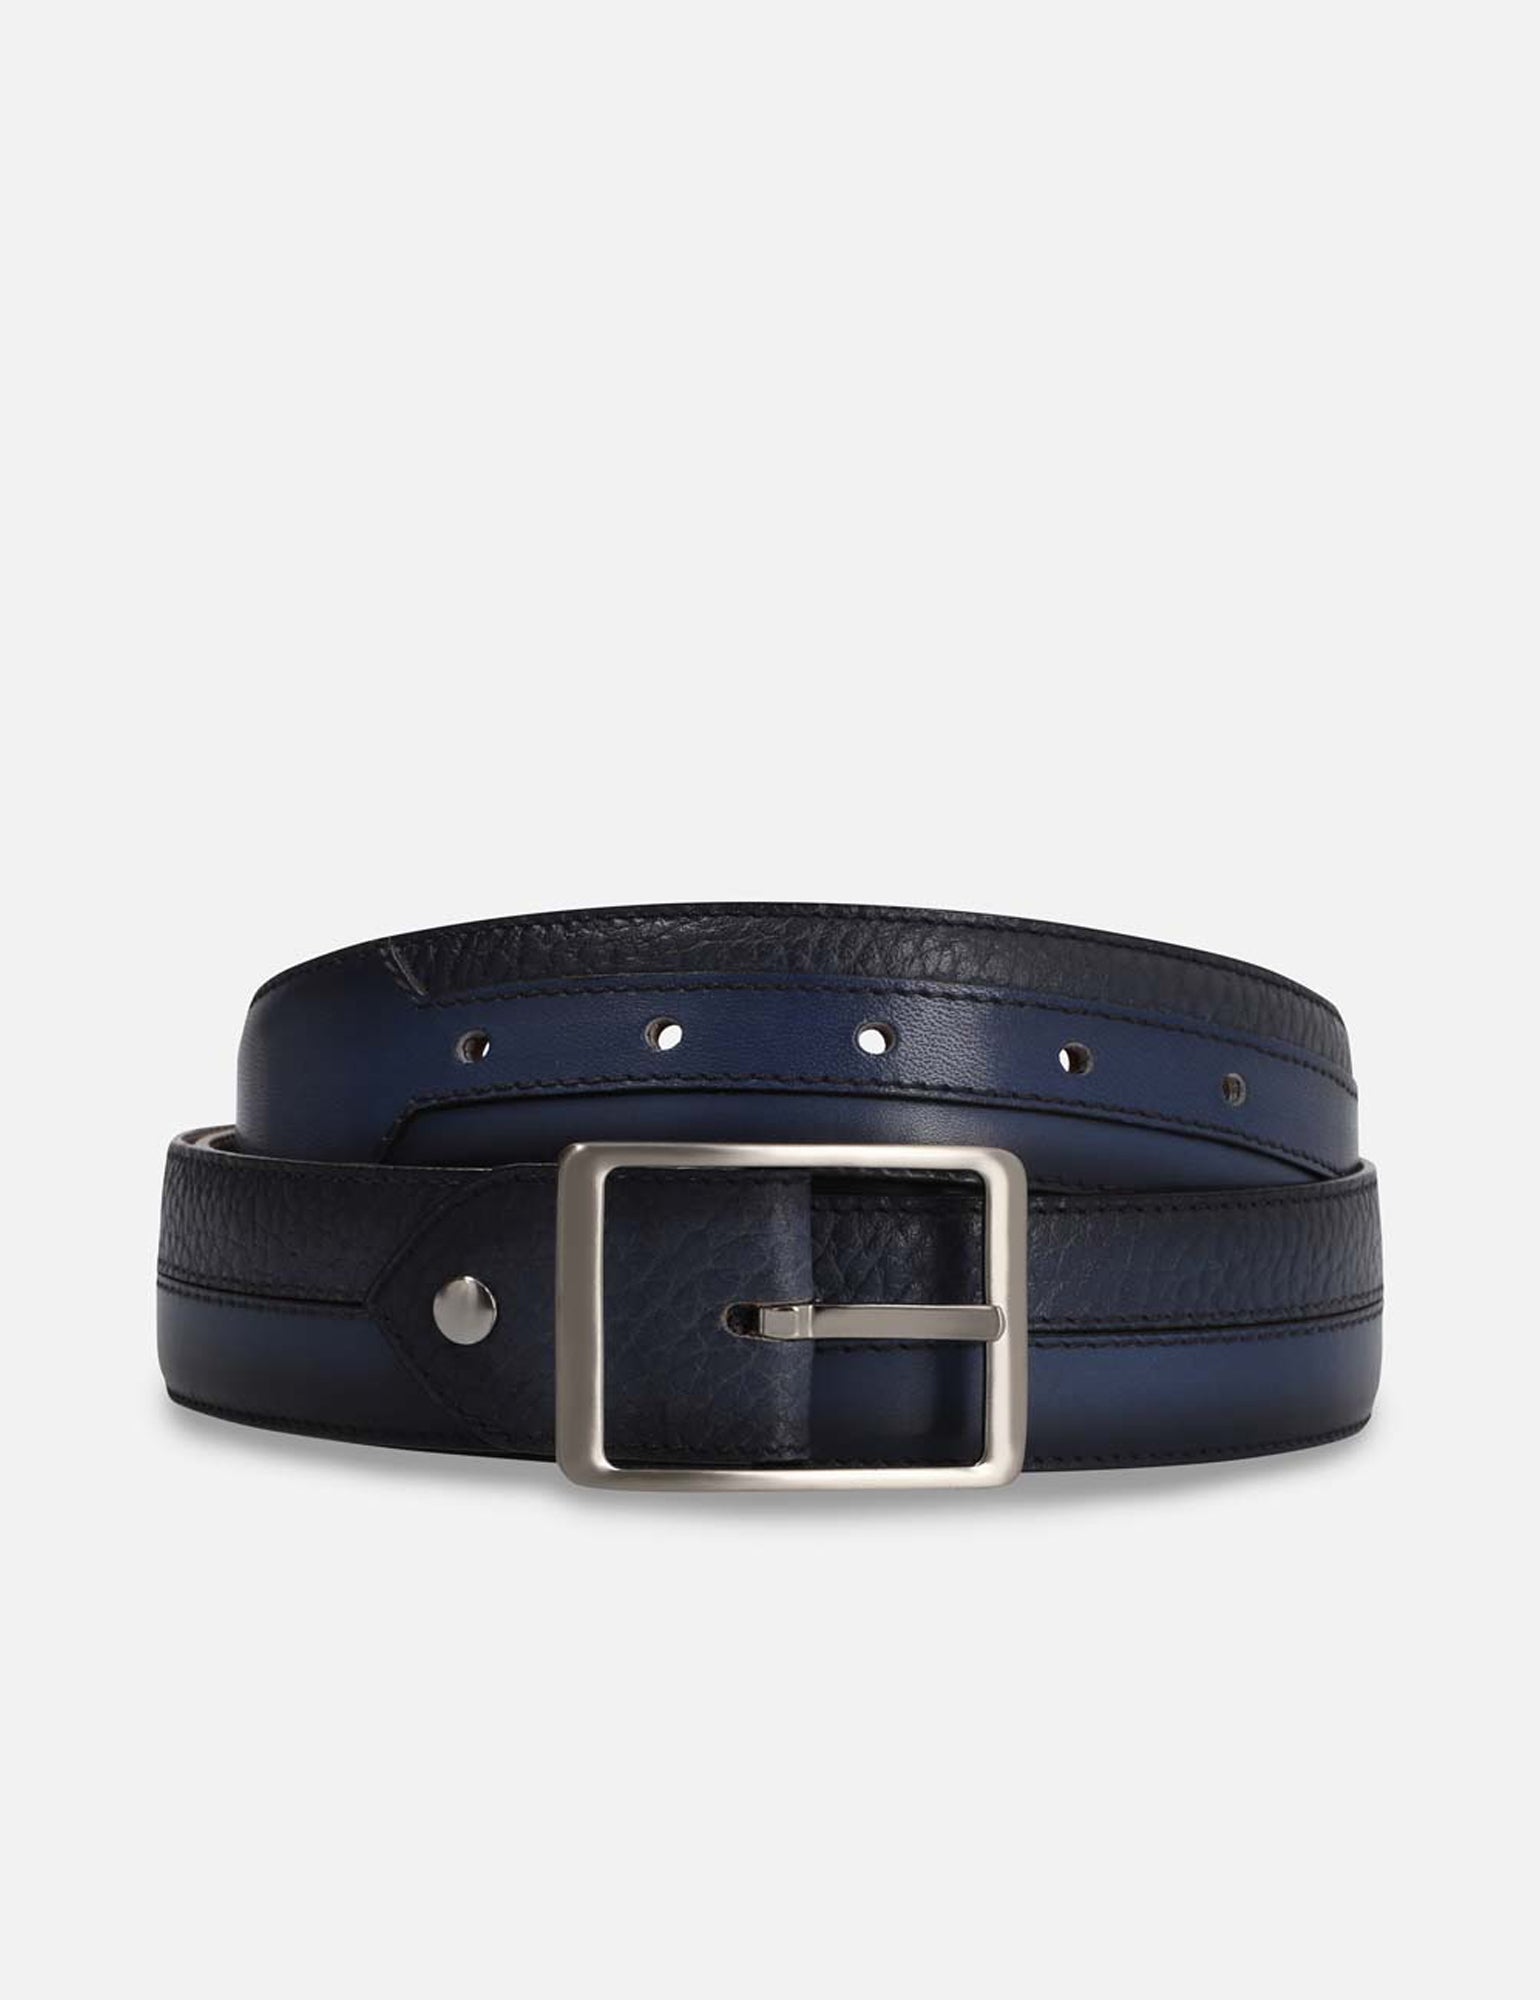 Cinturón en piel color azul